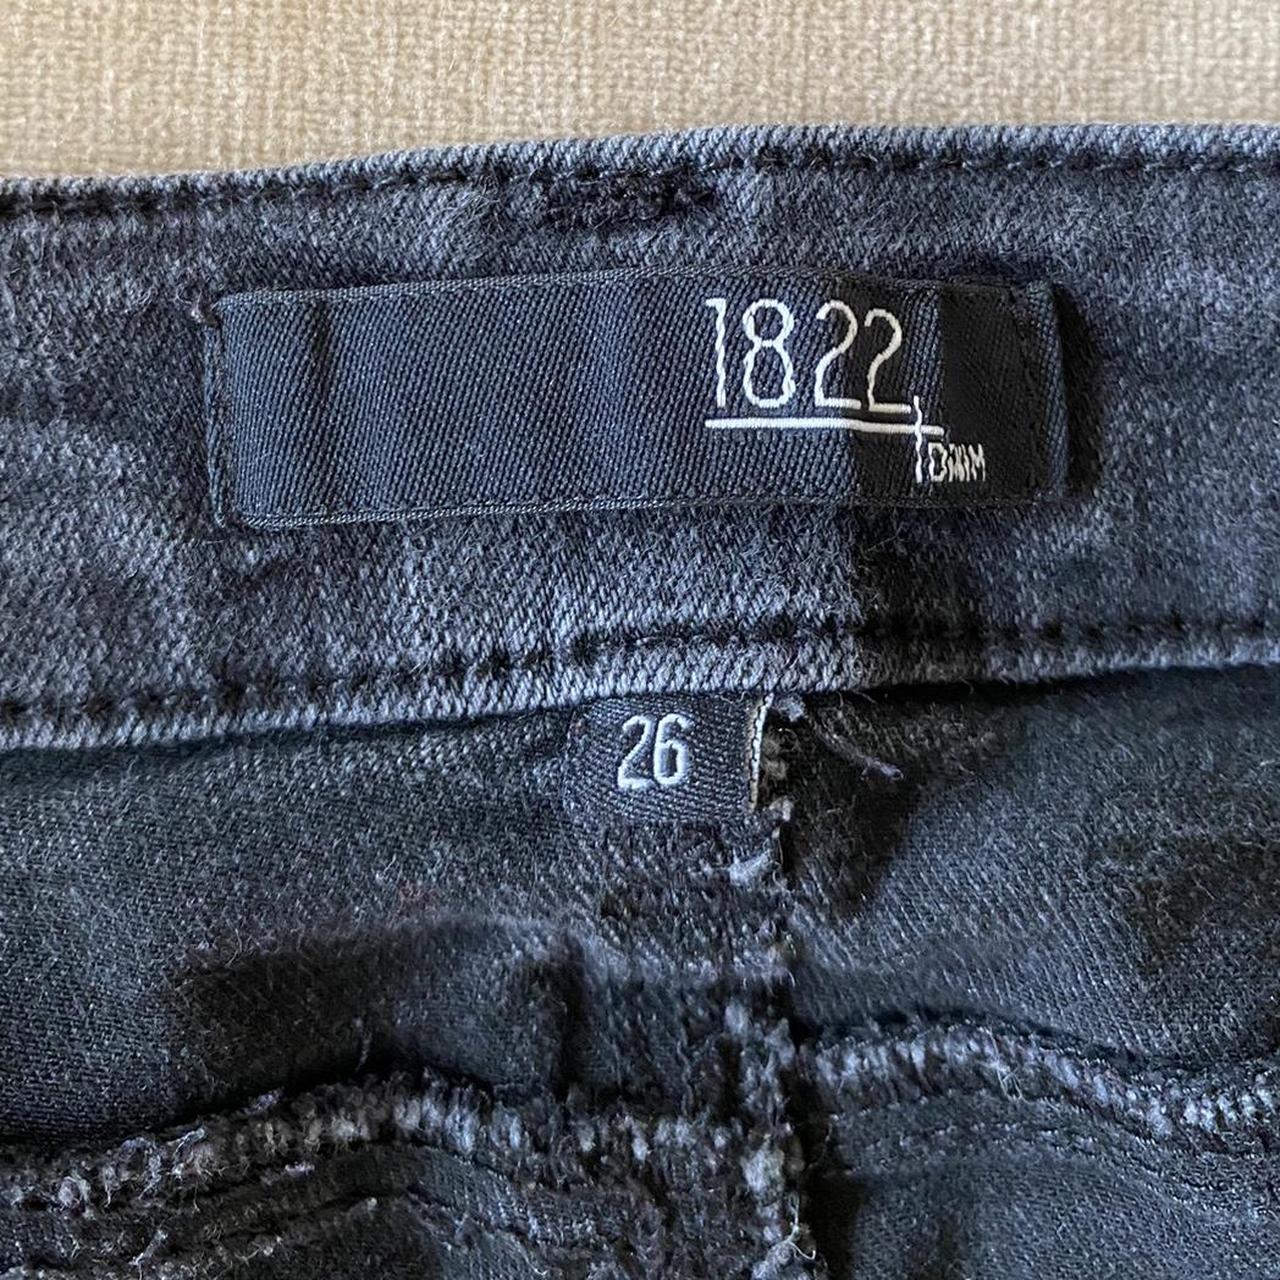 1822 denim low rise bootcut jeans color:... - Depop